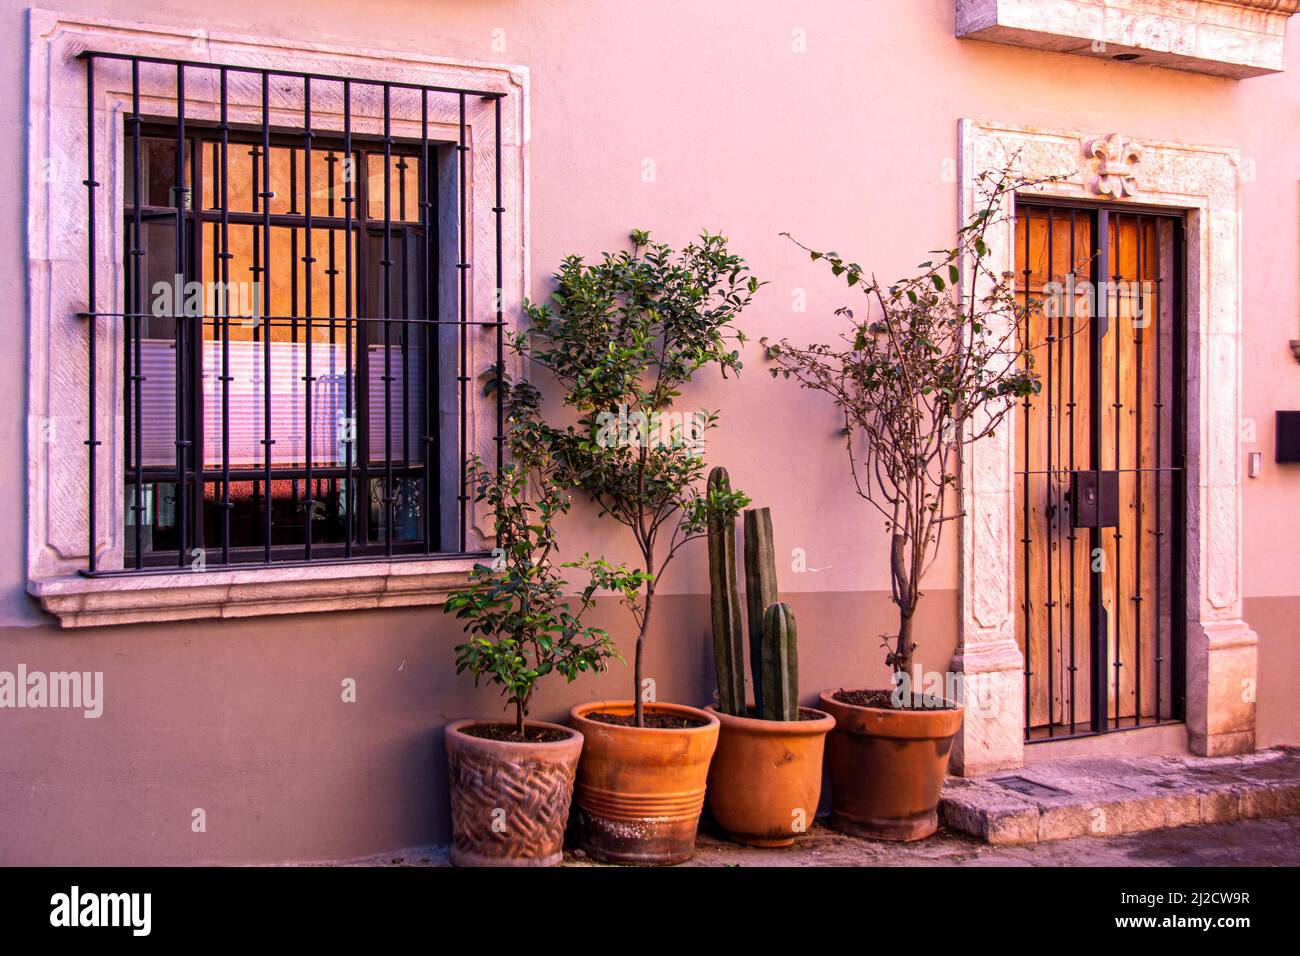 La facciata di una casa decorata con piante e barre di ferro battuto. San Miguel de Allende, Guanajuato, Messico. Foto Stock